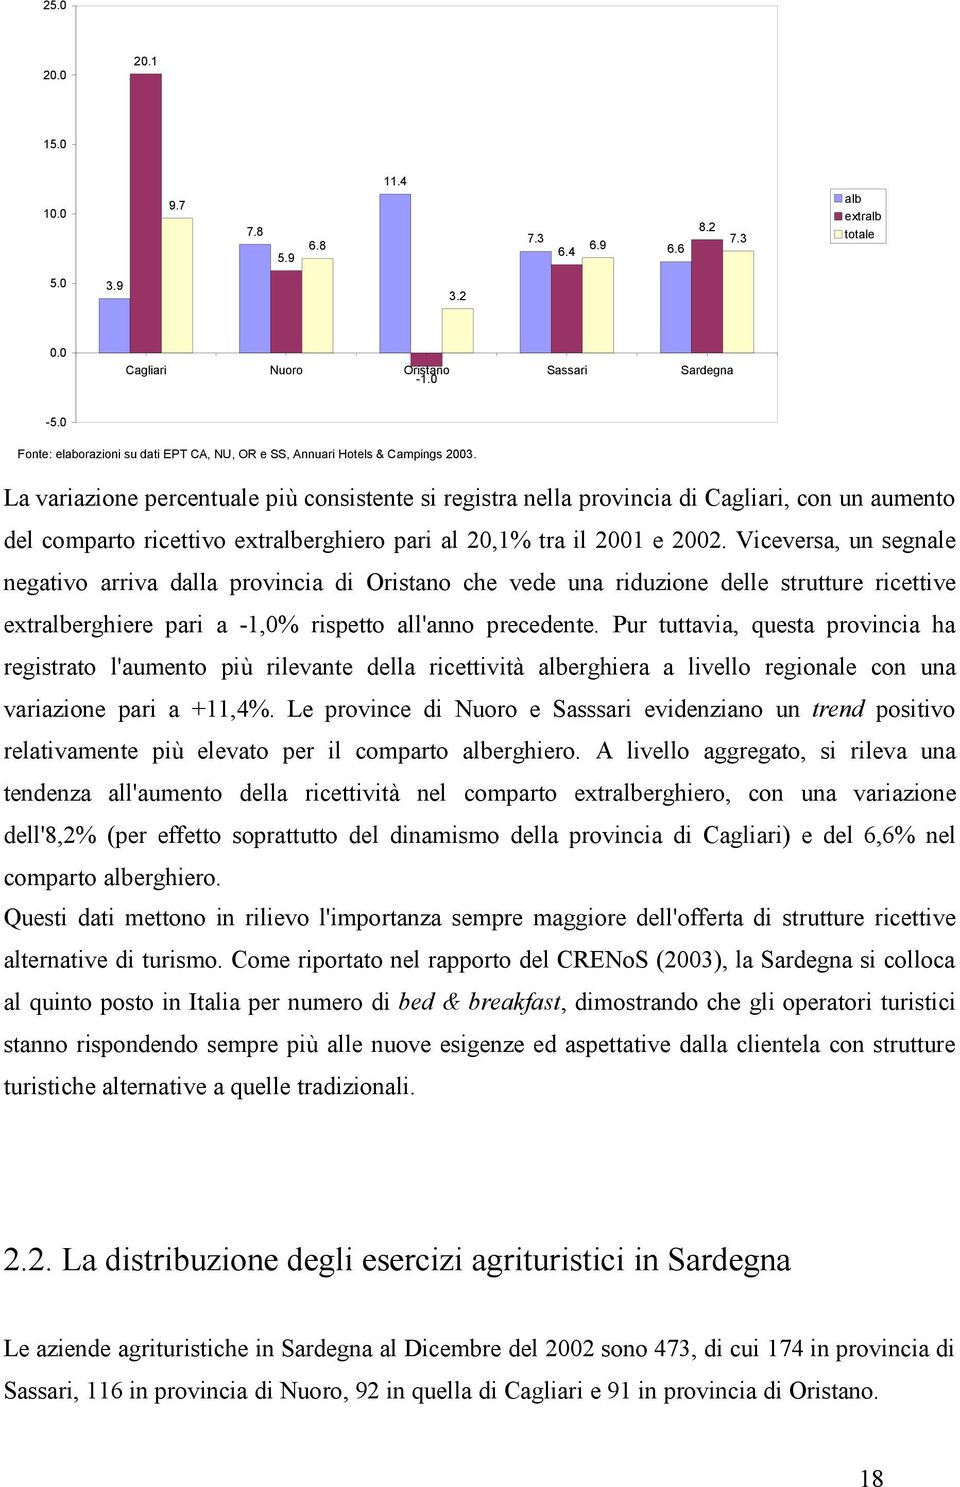 La variazione percentuale più consistente si registra nella provincia di Cagliari, con un aumento del comparto ricettivo extralberghiero pari al 20,1% tra il 2001 e 2002.